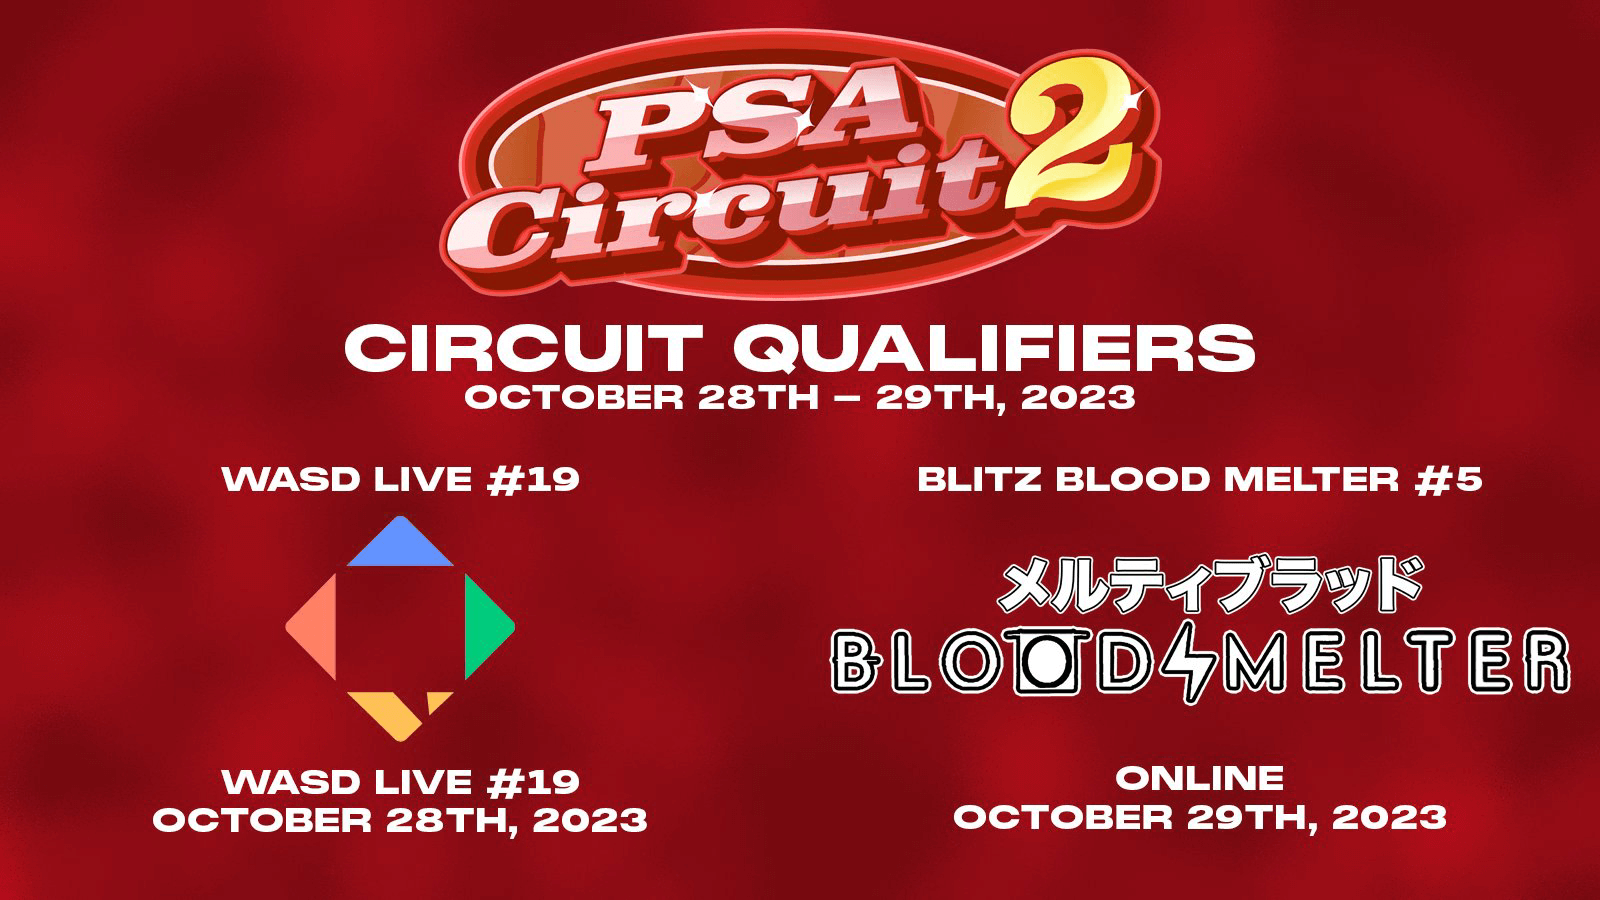 MBTL: Two PSA Circuit 2 Qualifiers in One Weekend